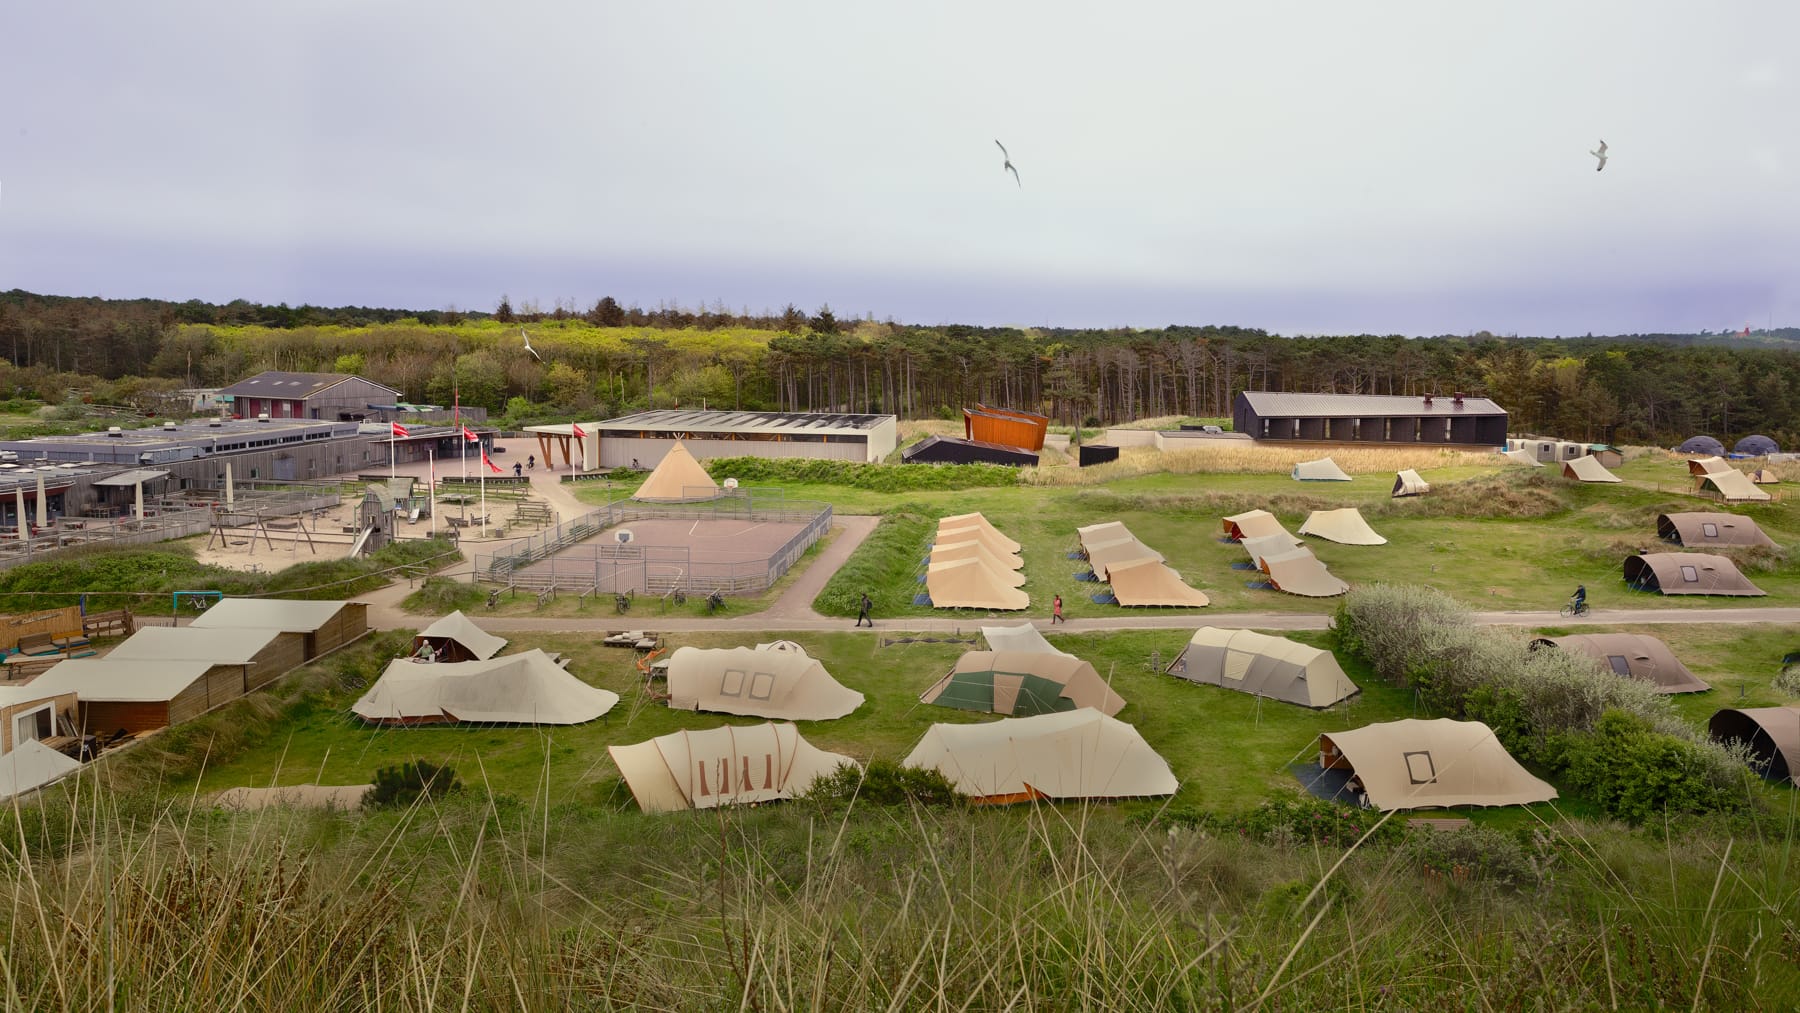 Studio Brandvries | ontwerp kampeerwinkel en de nulck op camping stortemelk vlieland door architectenbureau rotterdam | Studio Brandvries